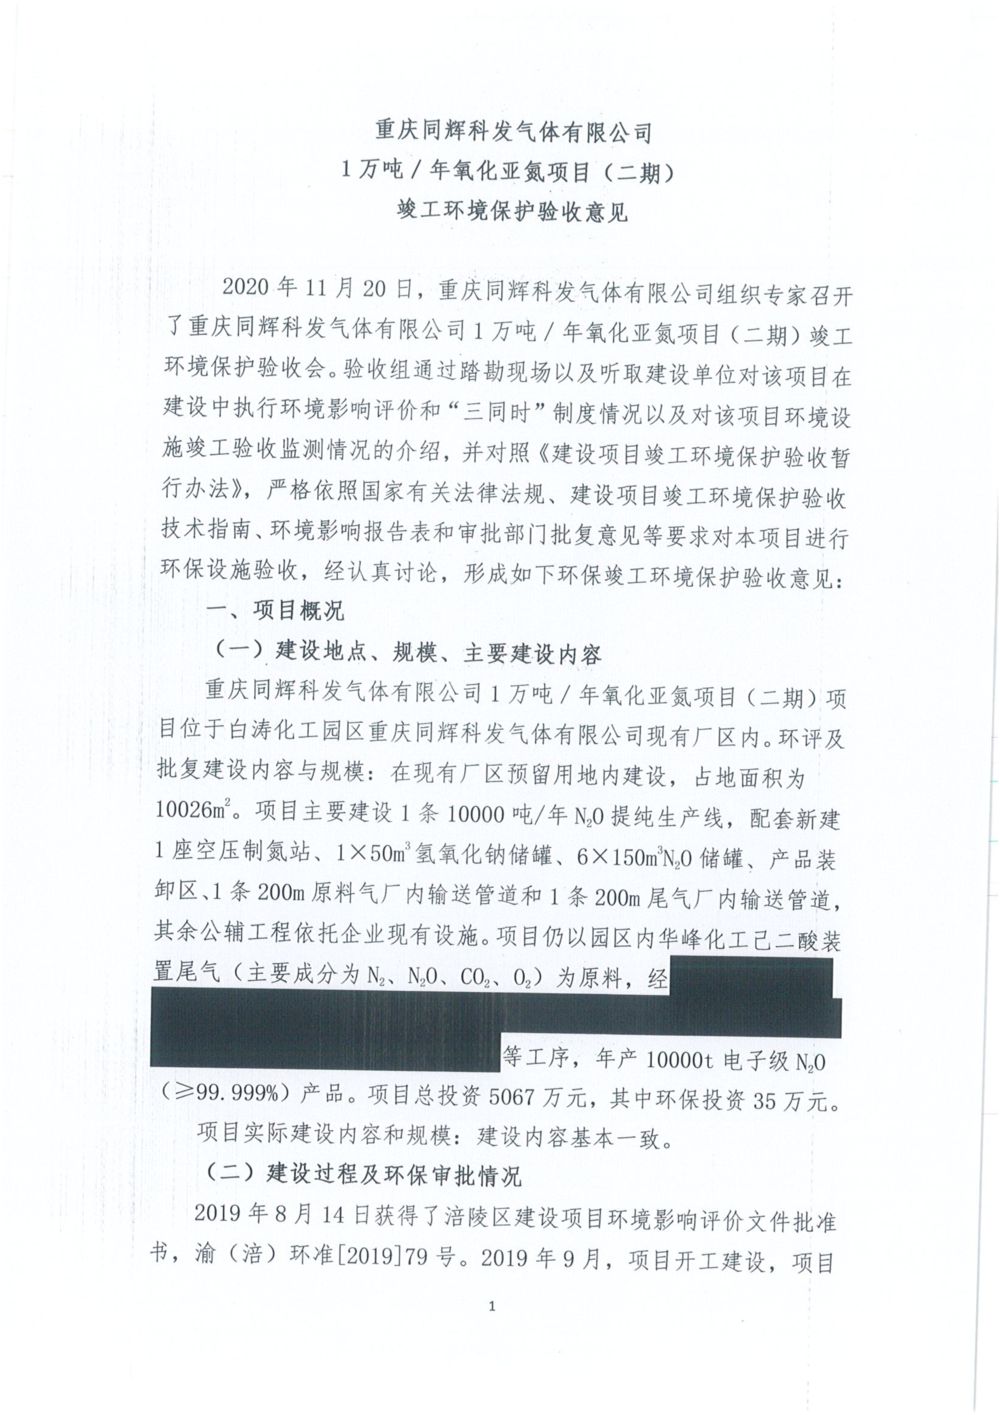 重慶同輝科發氣體有限公司二期環保驗收意見公示版